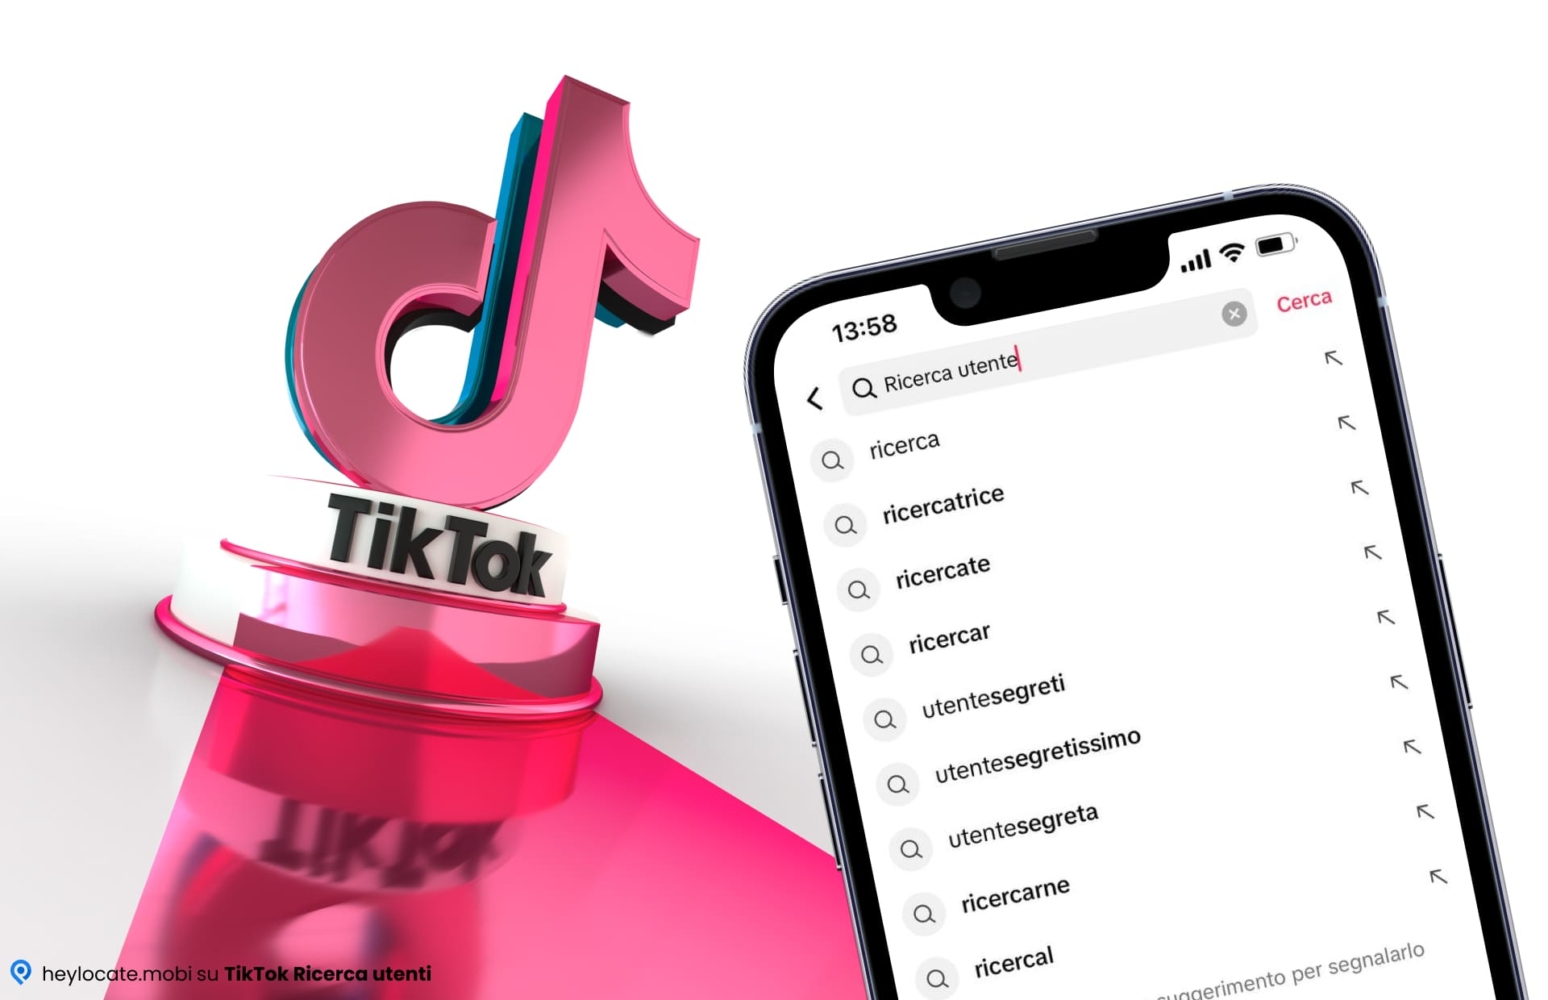 Questa immagine mostra il concetto di ricerca utente sulla piattaforma TikTok. Il primo piano mostra lo schermo di un telefono cellulare con "Ricerca utente" nella barra di ricerca e varie opzioni di ricerca e anteprima. Lo sfondo raffigura il logo di TikTok nei colori rosa e blu. L'impressione generale dell'immagine è moderna e orientata al digitale.